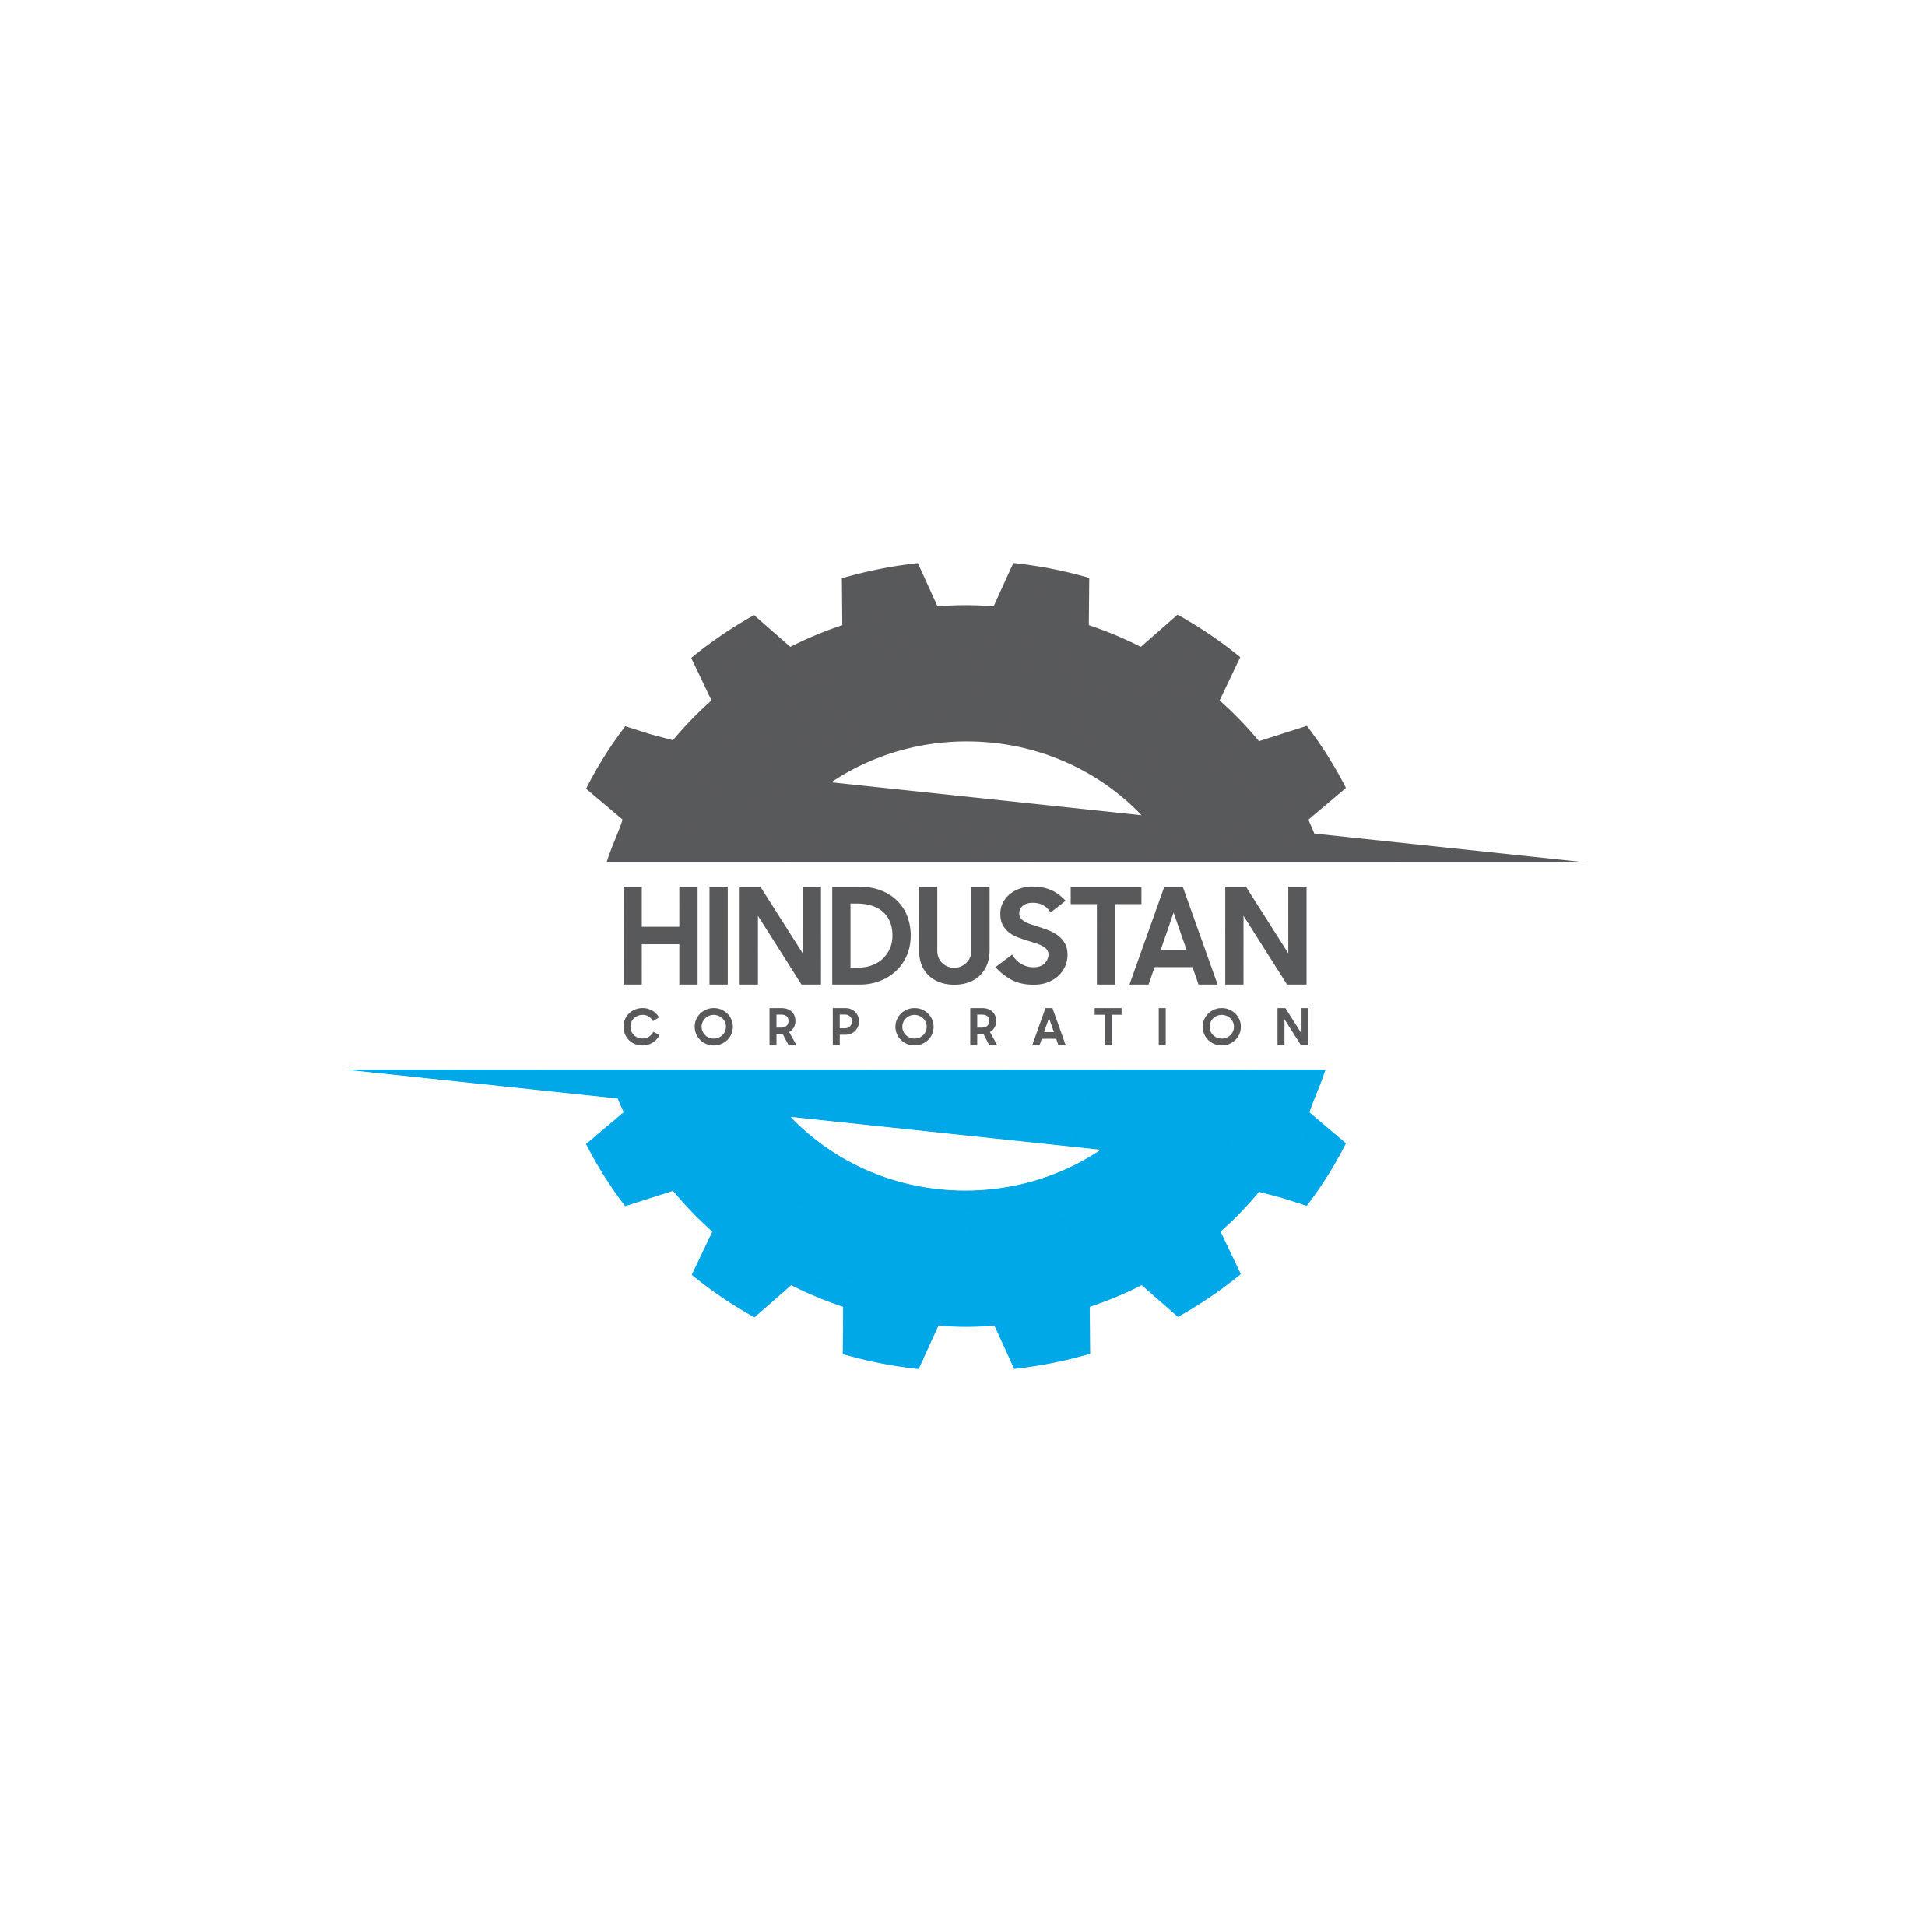 Hindustan Corporation